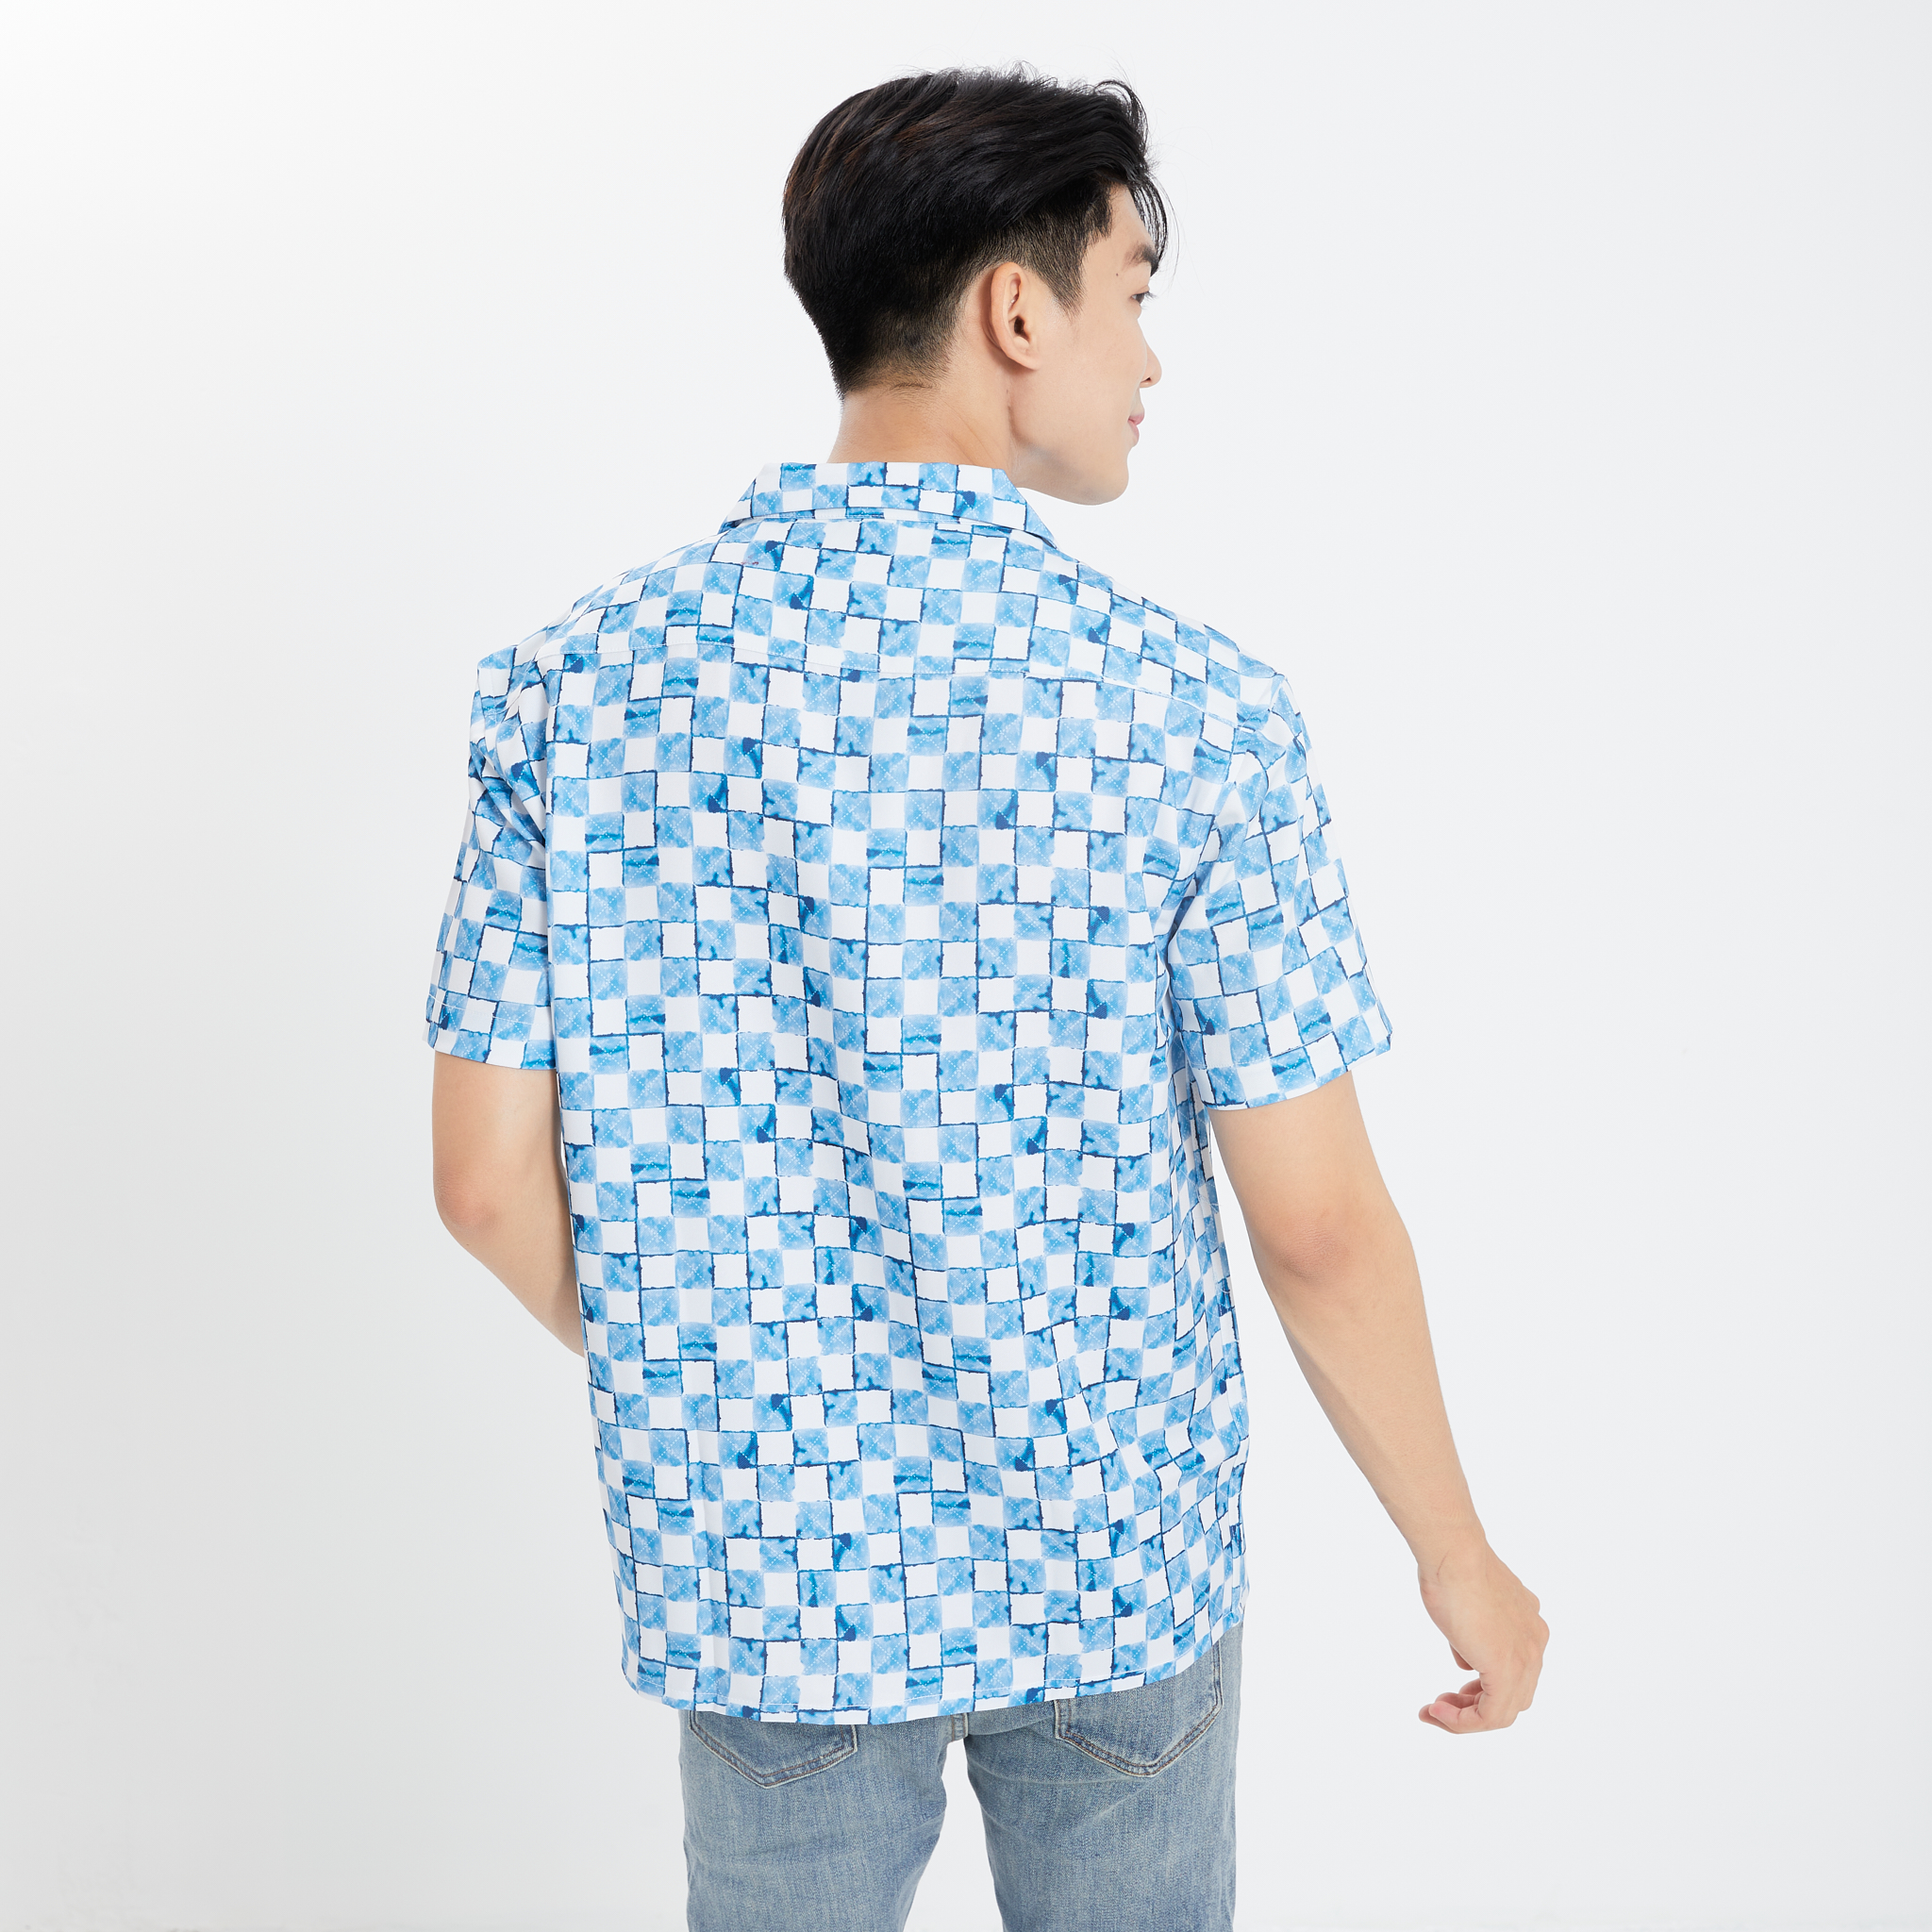 Louis Vuitton 2018 Hawaiian Sheer Shirt - Black Casual Shirts, Clothing -  LOU749539